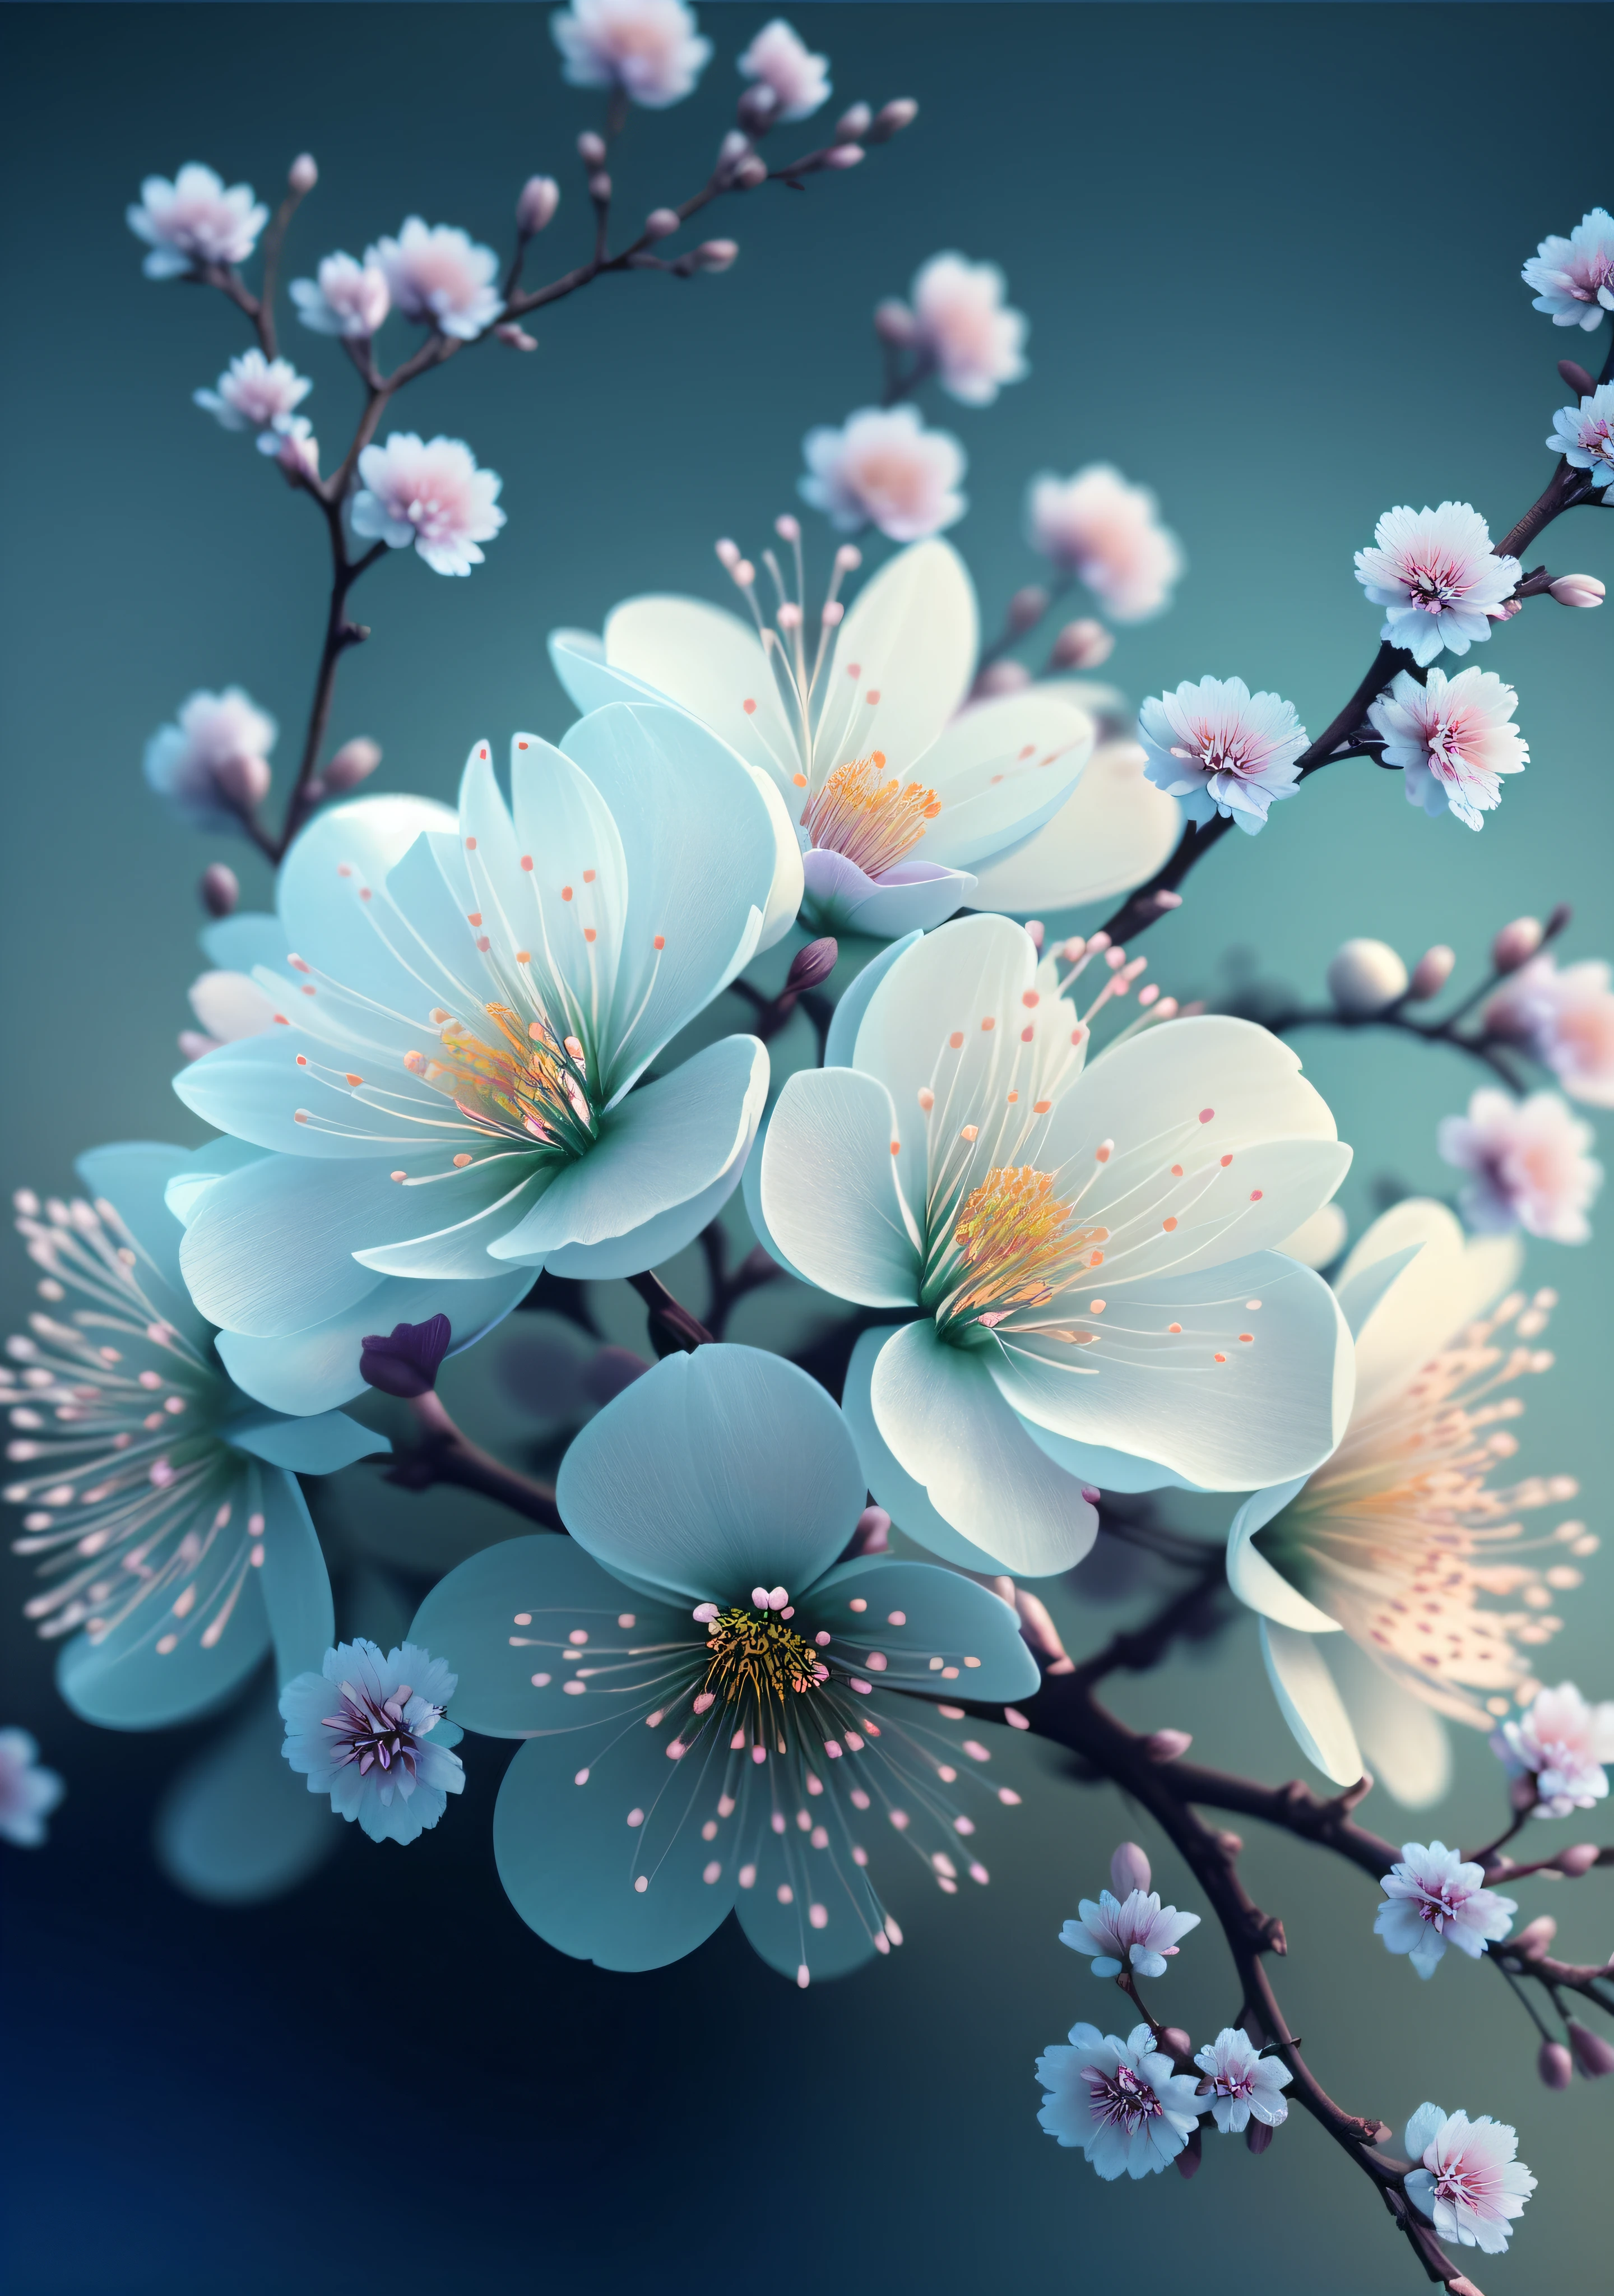 Es gibt eine Nahaufnahme eines Blumenstraußes auf einem Zweig, Paul Barson, Blumenblüten, schöne digitale Kunstwork, schöne digitale Kunst, Blumen und Blüten, surreale Waiizi-Blumen, Schöne Blumen, blühende Blumen, Blumen mit aufwendigen Details, unglaublich hübsch, wunderschöne Kunst, schöne Komposition 3 - d 4 k, wunderschöne digitale Kunst, Sakura-Blüten